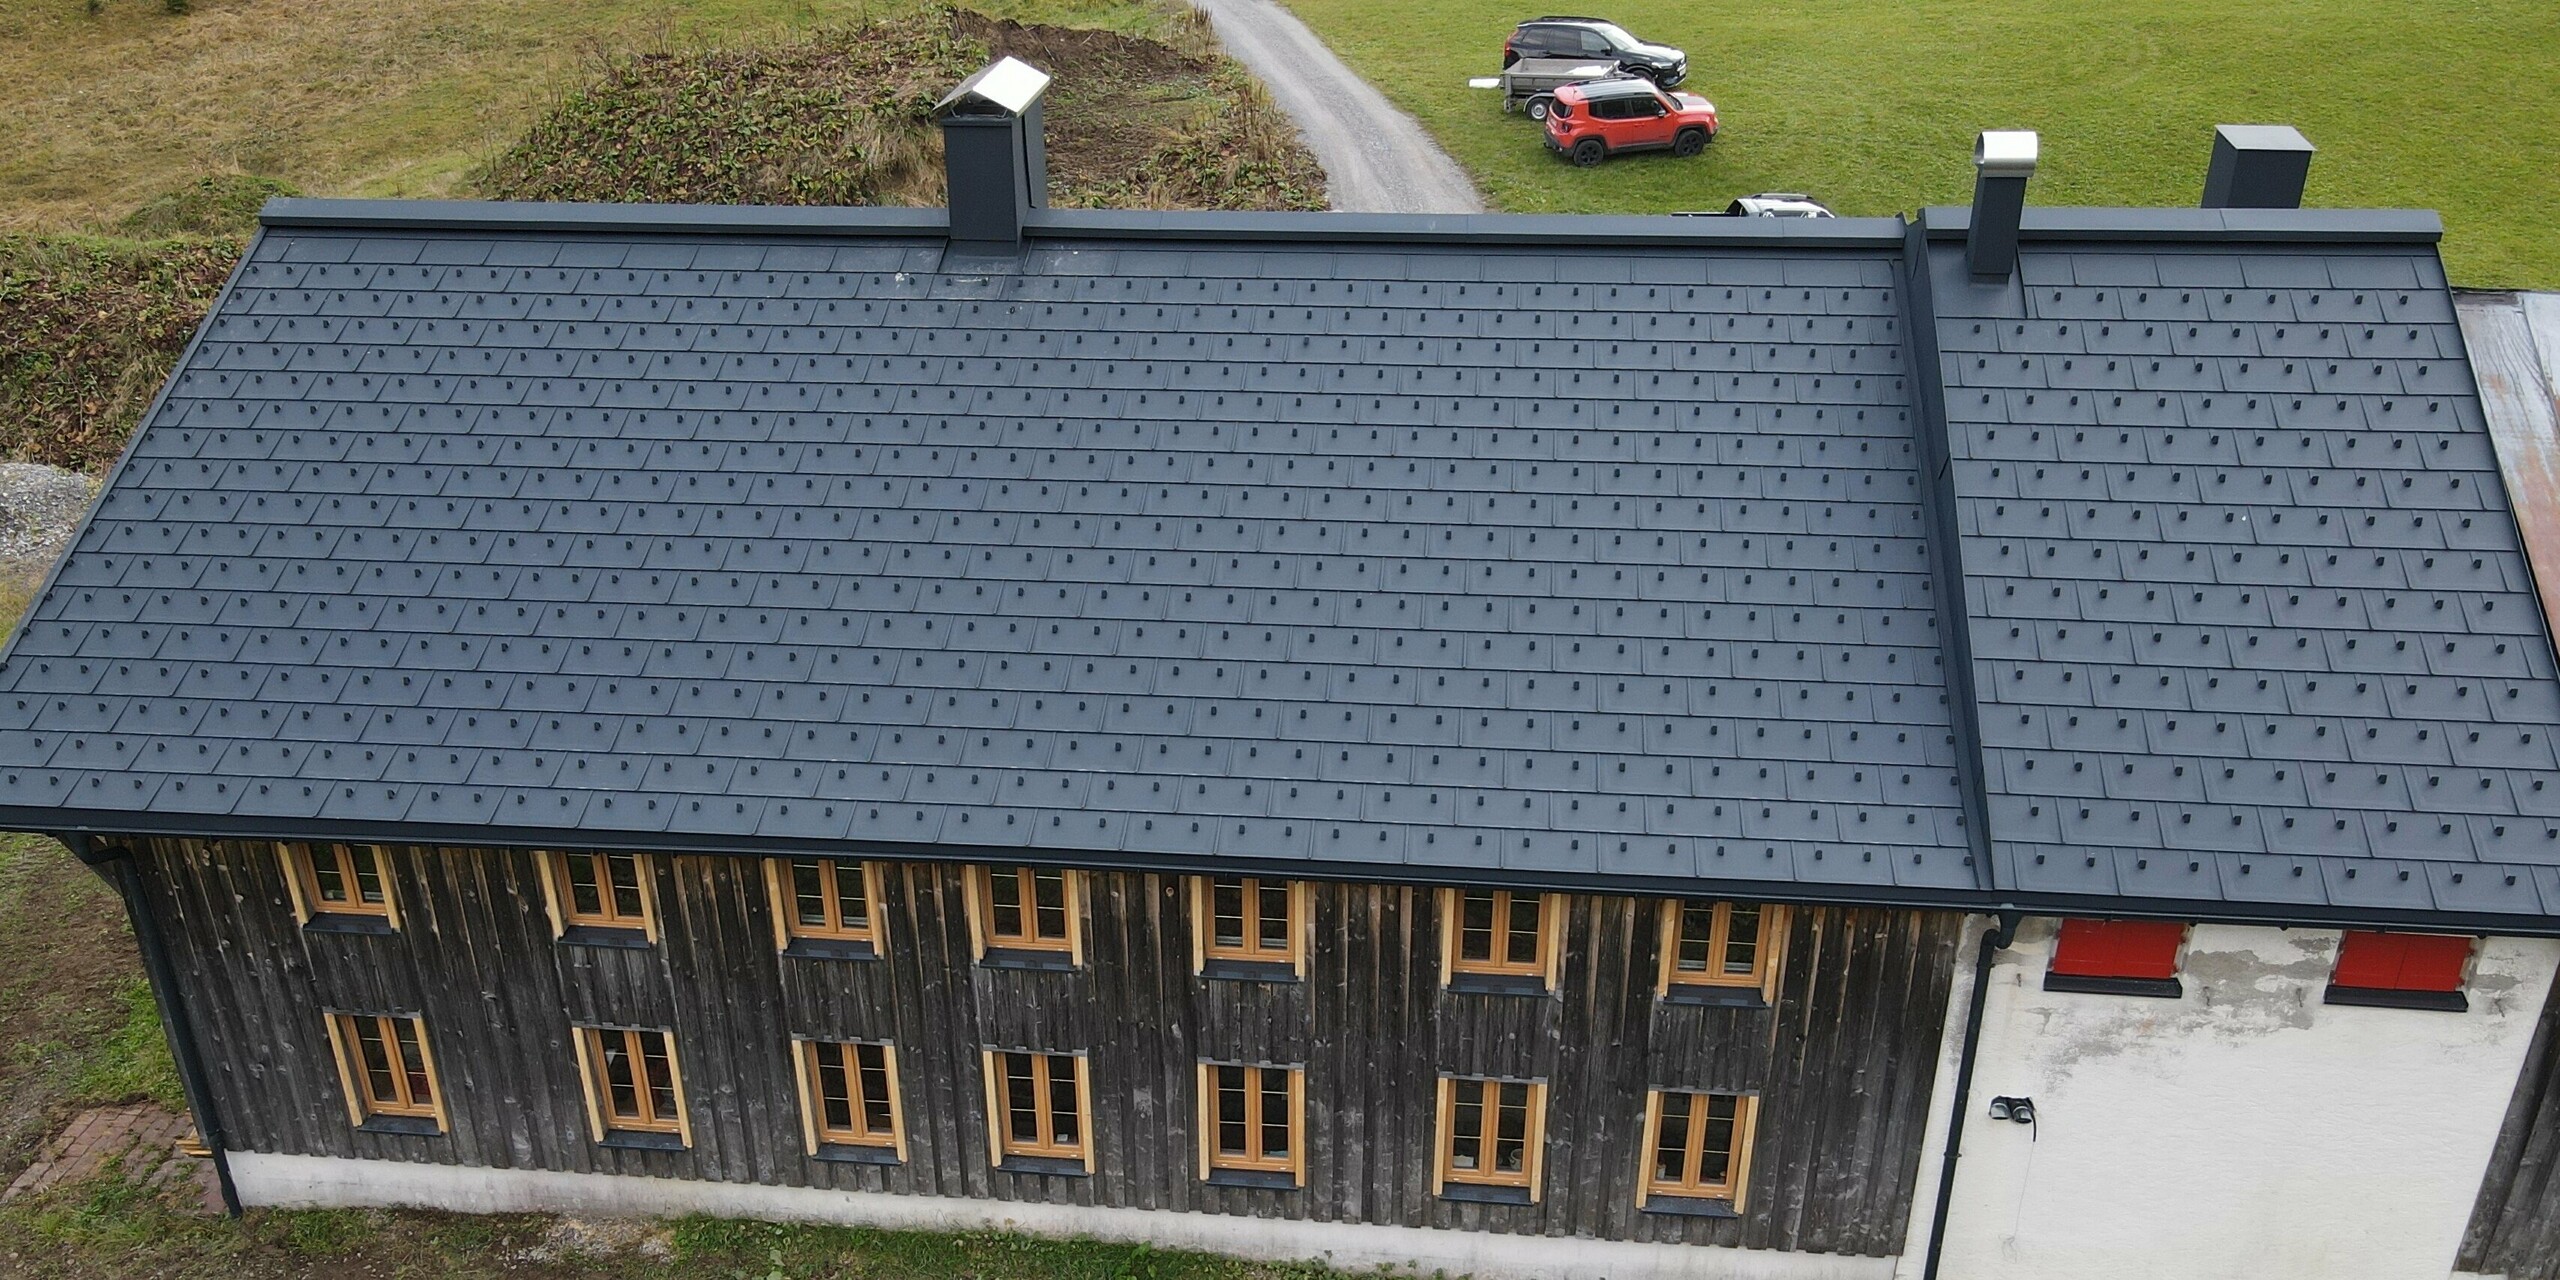 PREFA Solardachplatte in P.10 Anthrazit auf dem Alten Walserhaus in Warth, Vorarlberg